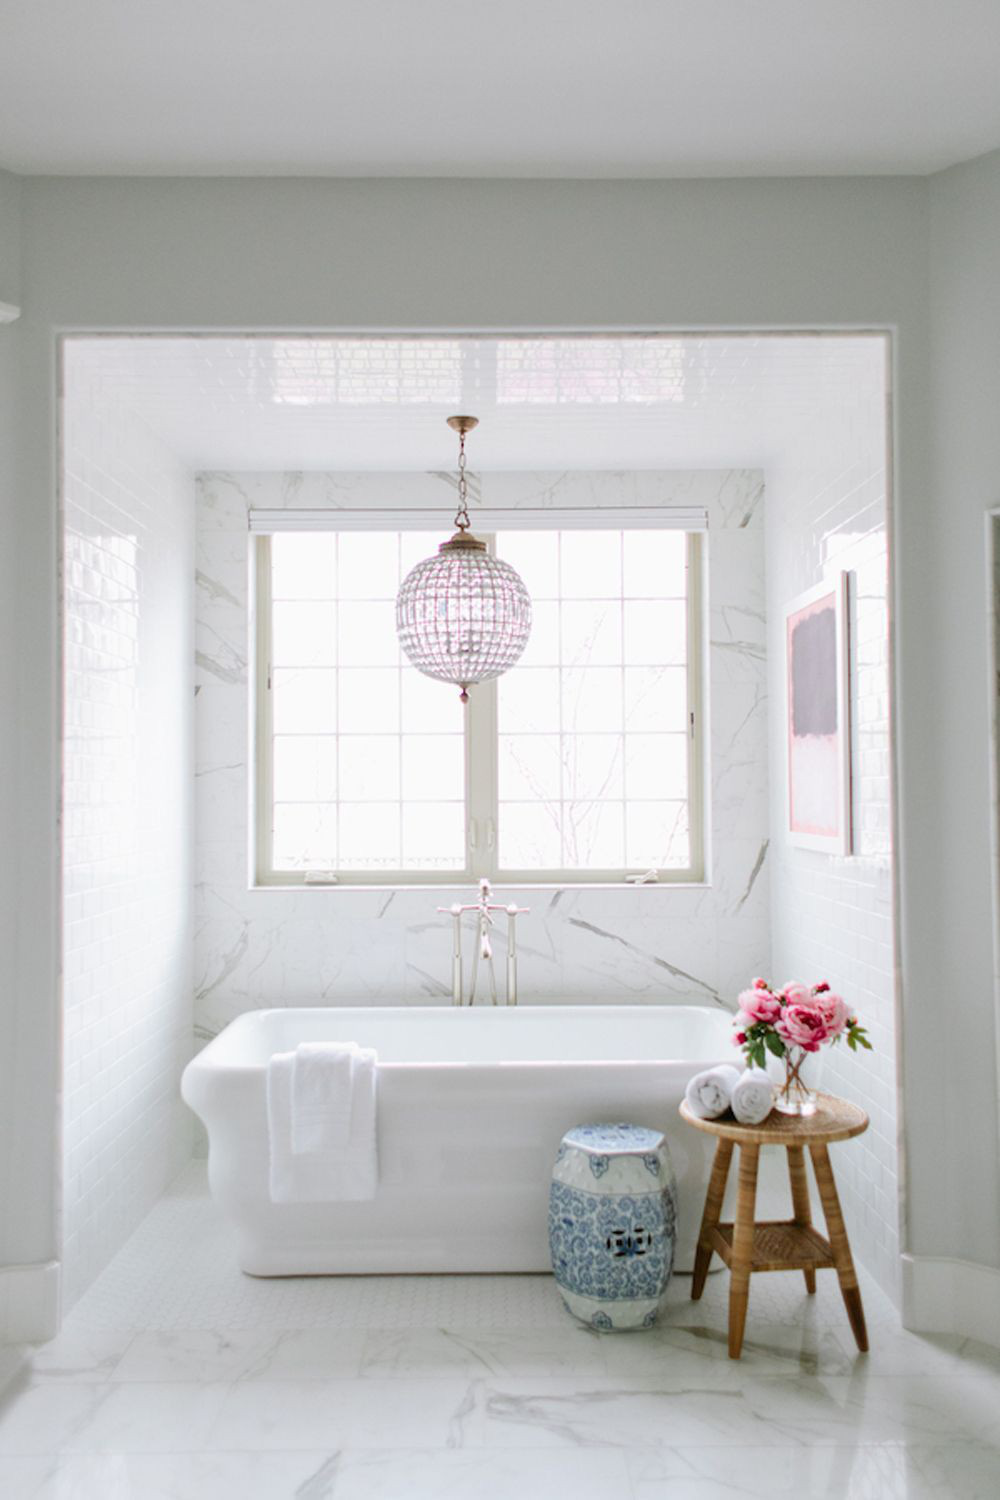  Sử dụng đèn chùm hoa oải hương và tác phẩm nghệ thuật, một chiếc ghế sứ màu xanh tuyệt vời và bồn tắm sang trọng giúp không gian phòng tắm này trông đơn giản nhưng không nhàm chán.